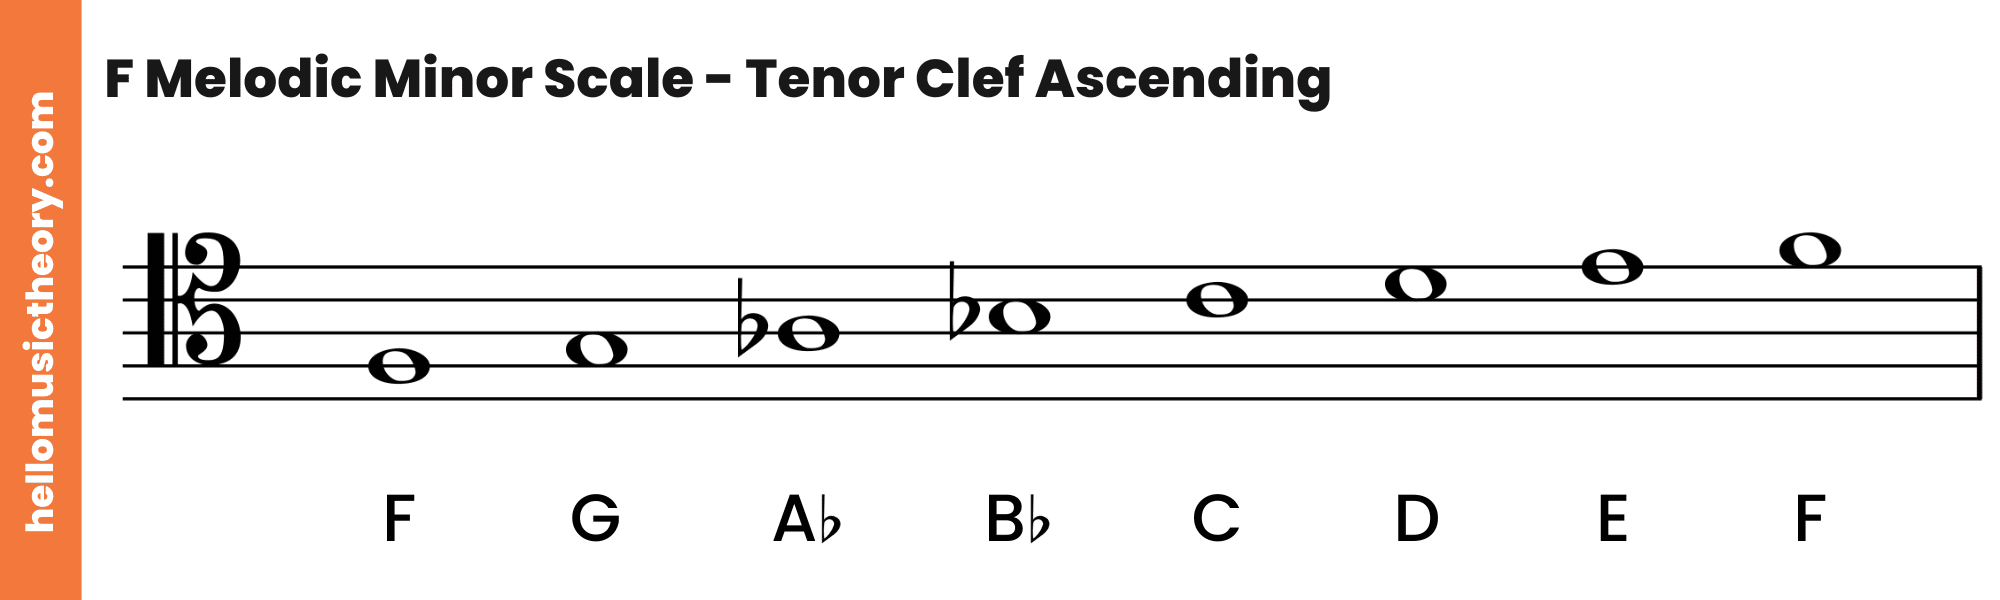 F Melodic Minor Scale Tenor Clef Ascending